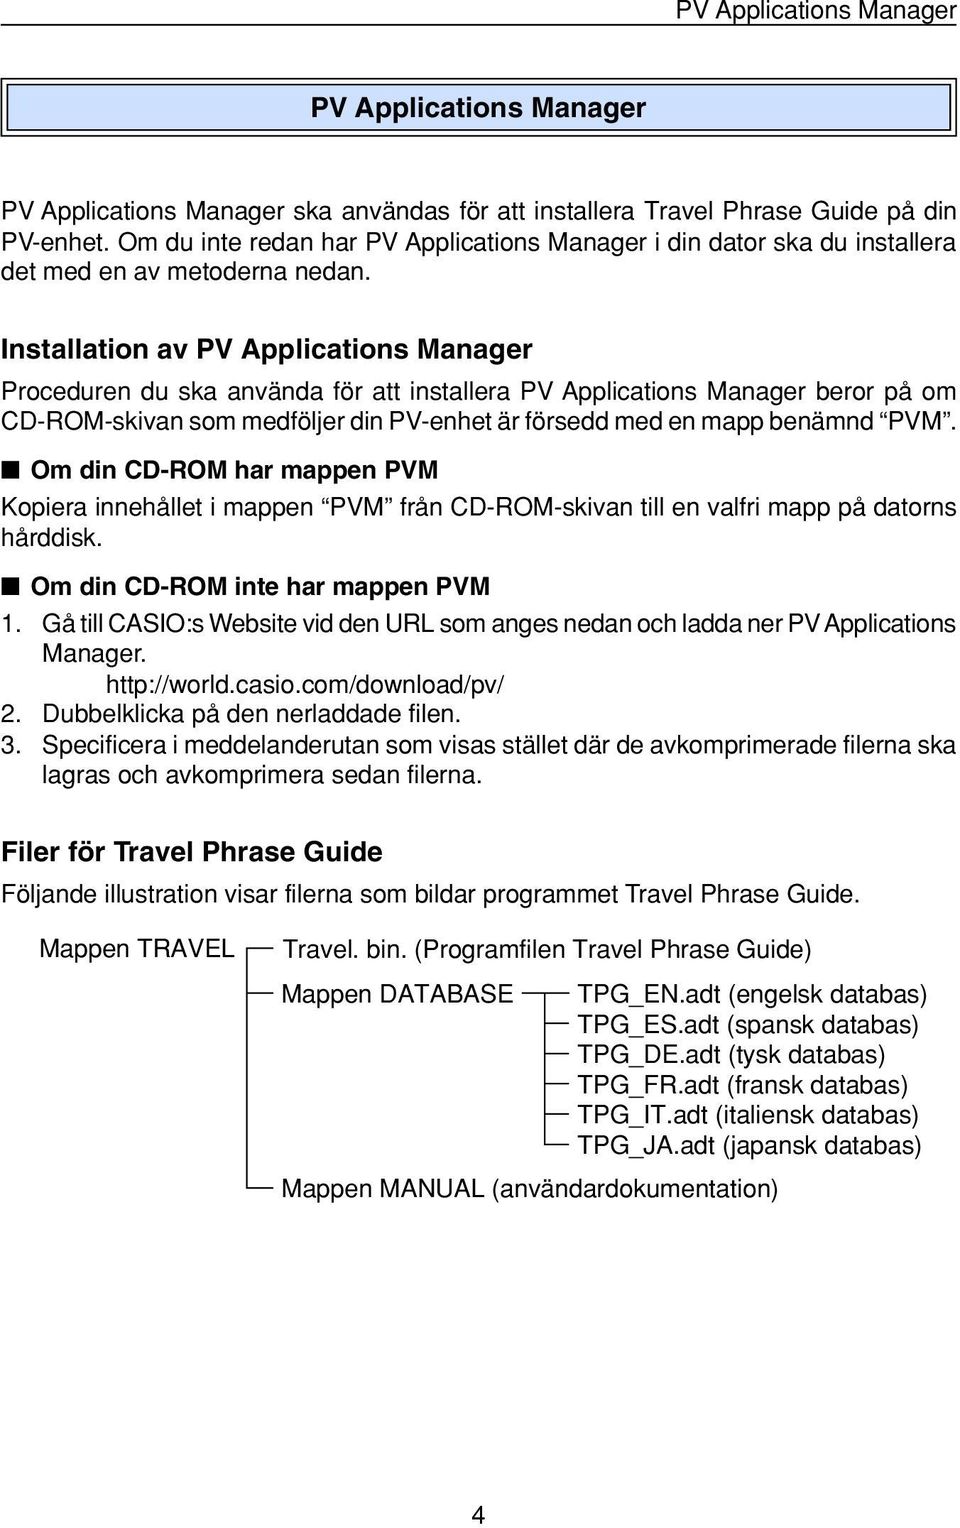 Installation av PV Applications Manager Proceduren du ska använda för att installera PV Applications Manager beror på om CD-ROM-skivan som medföljer din PV-enhet är försedd med en mapp benämnd PVM.